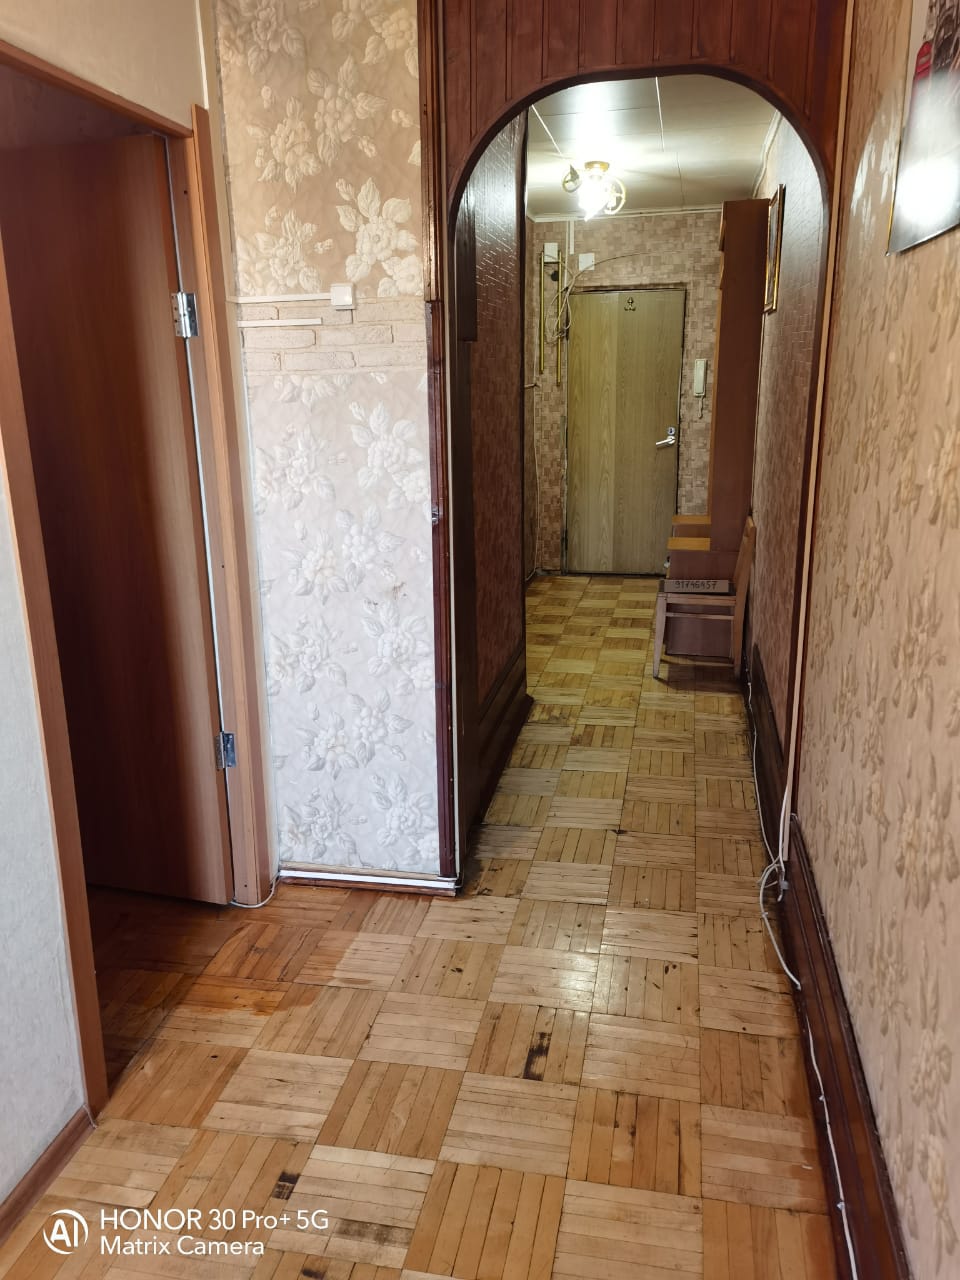 Двухкомнатная квартира на улице Машинцева в Химках. Дверь